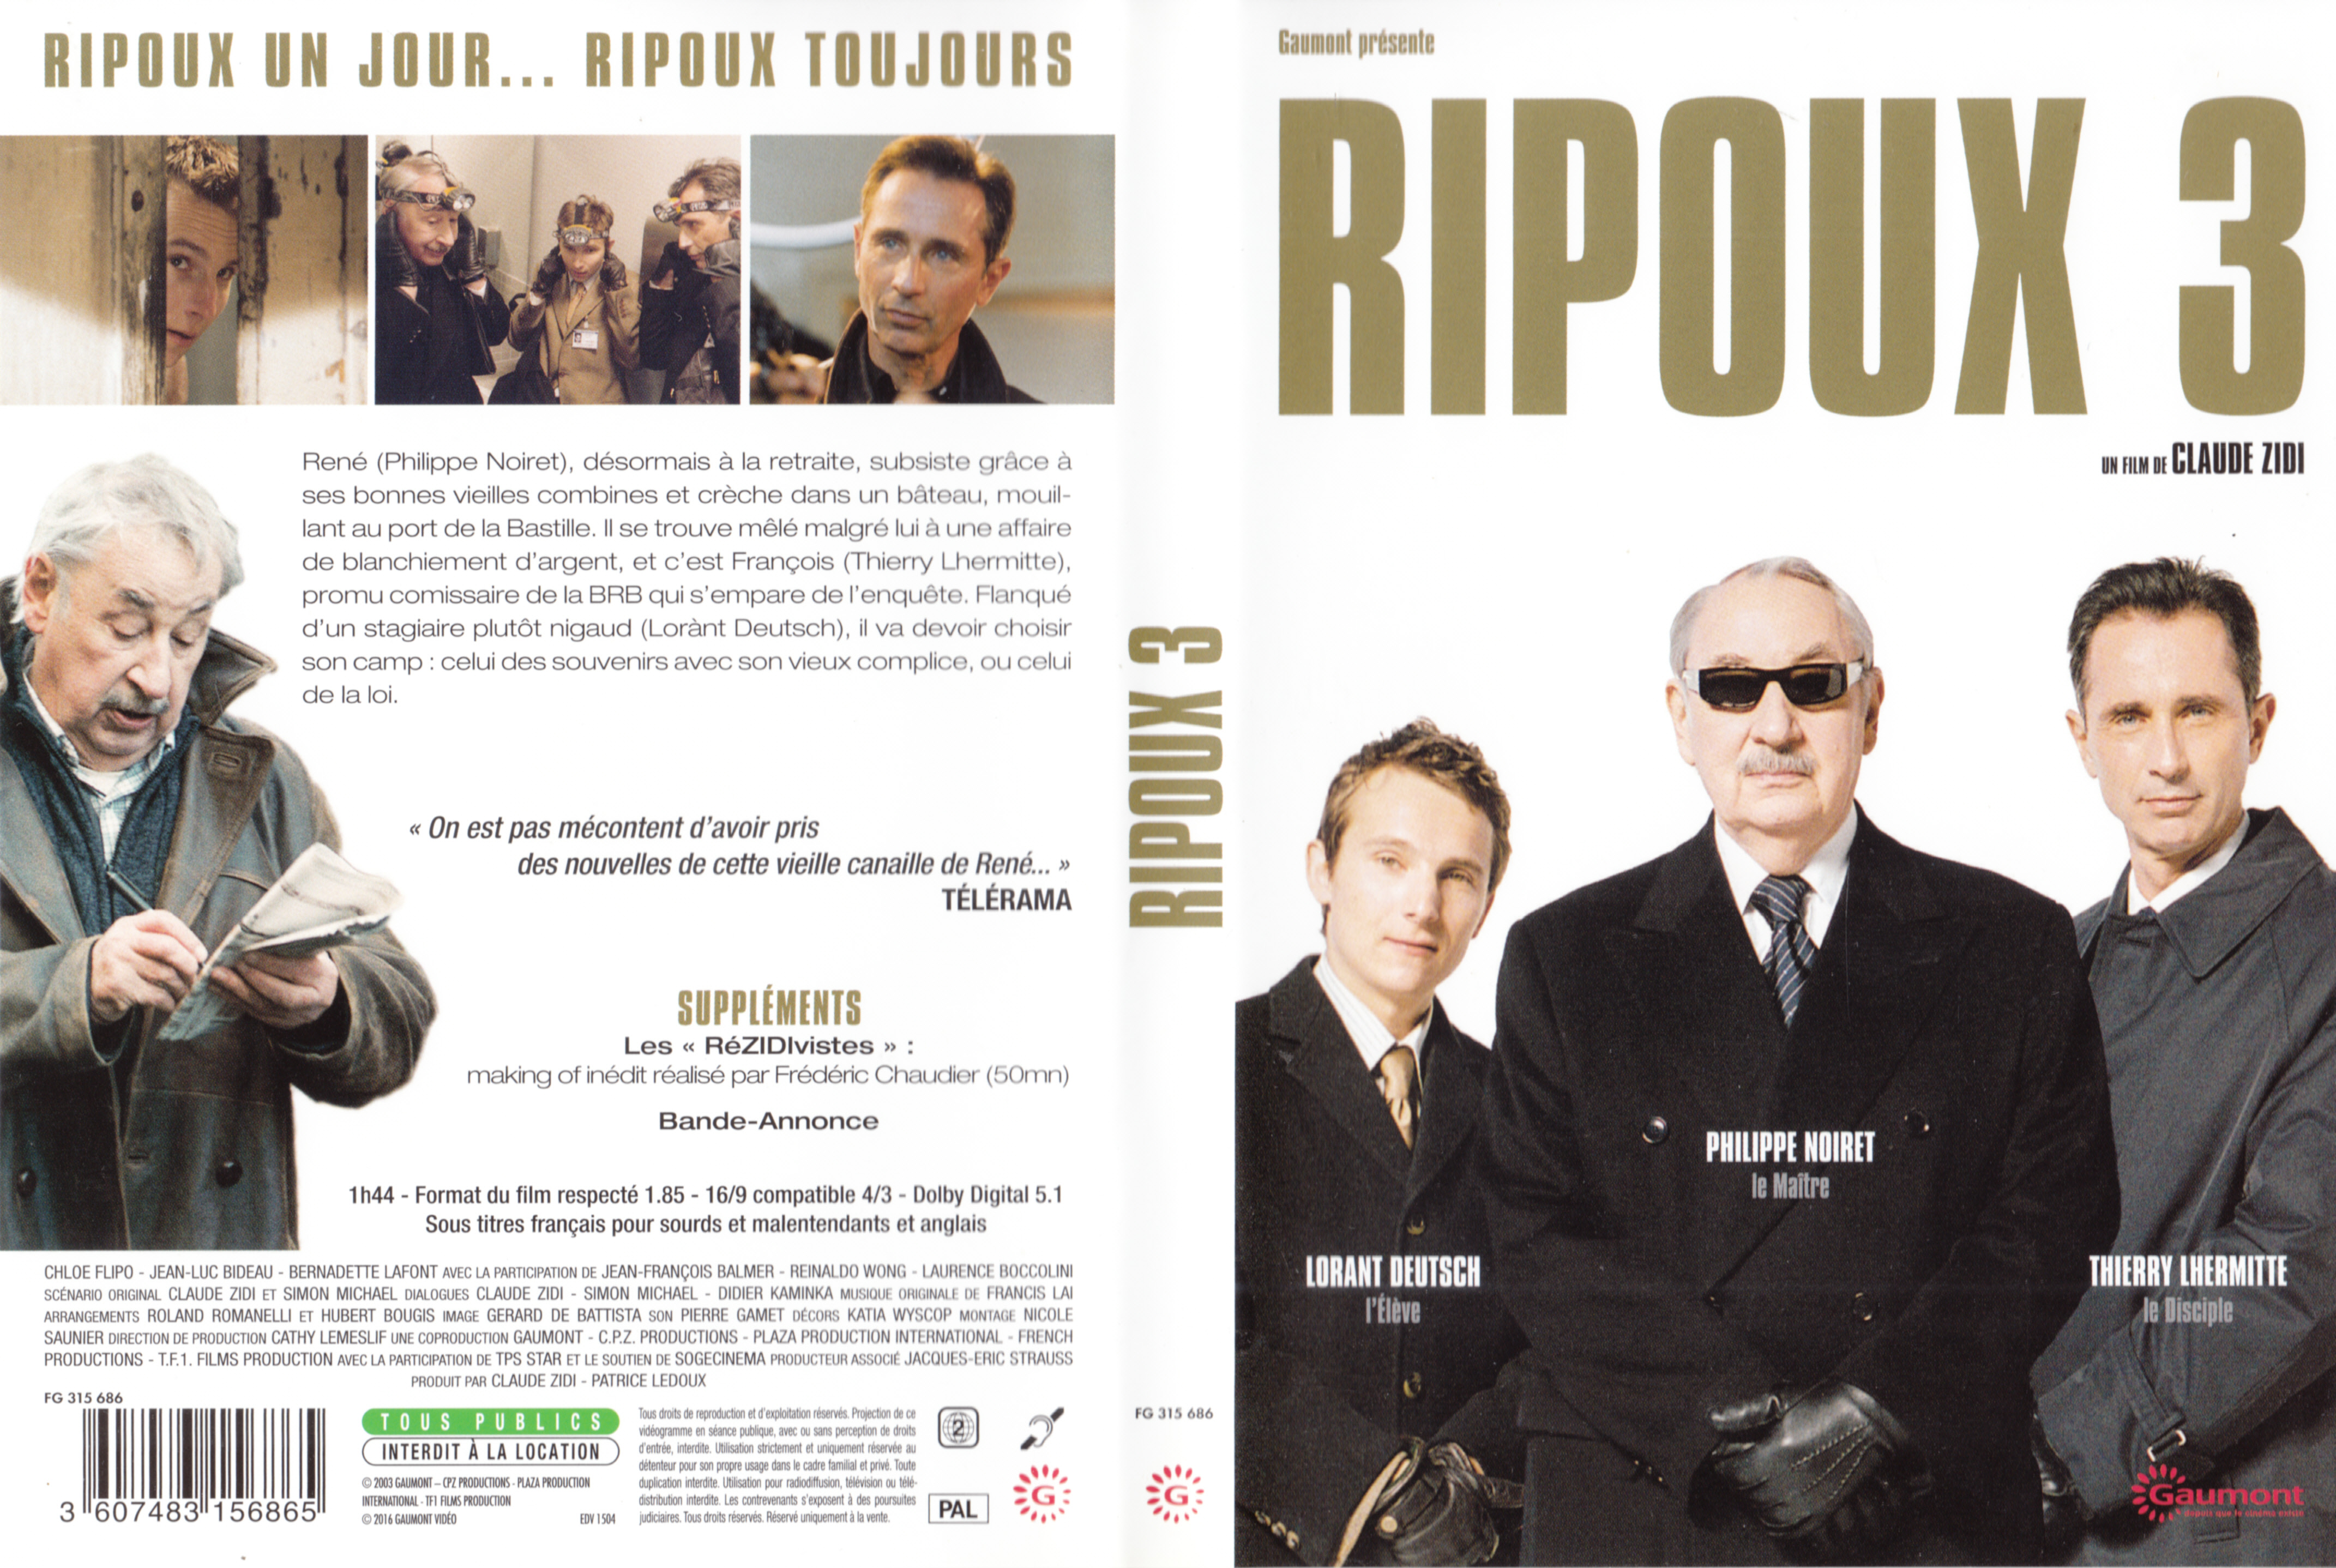 Jaquette DVD Ripoux 3 v3